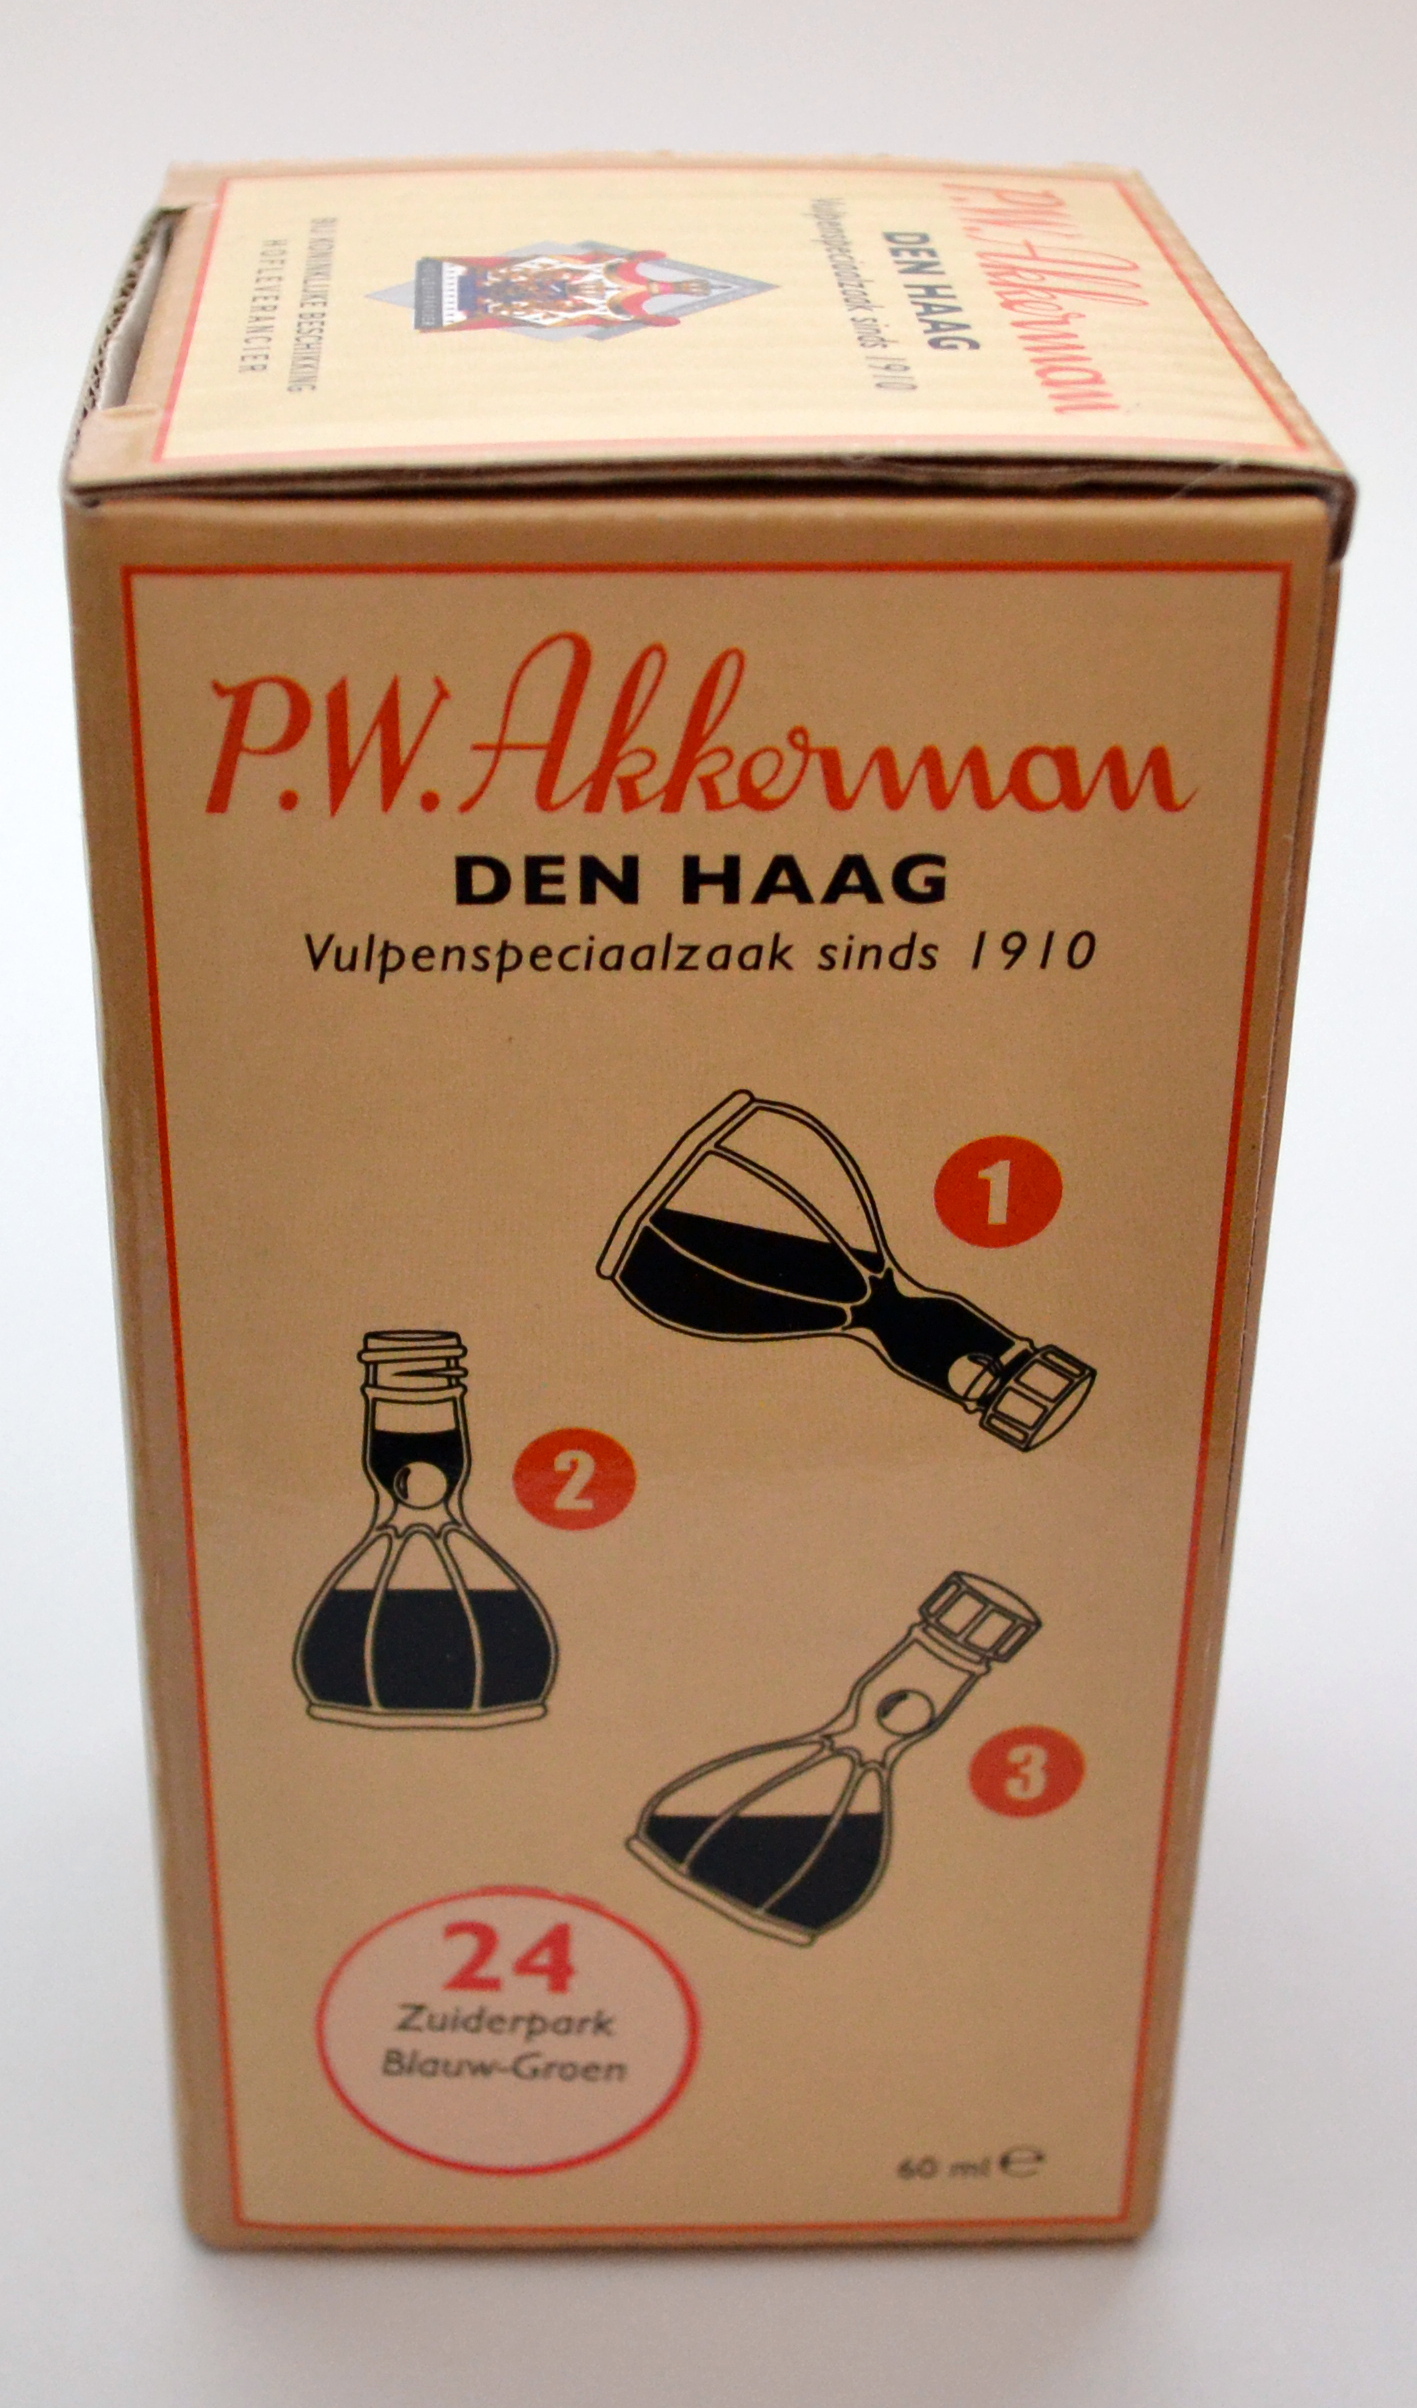 P.W. Akkerman #24 Zuiderpark Blauw-Groen Fountain Pen Ink